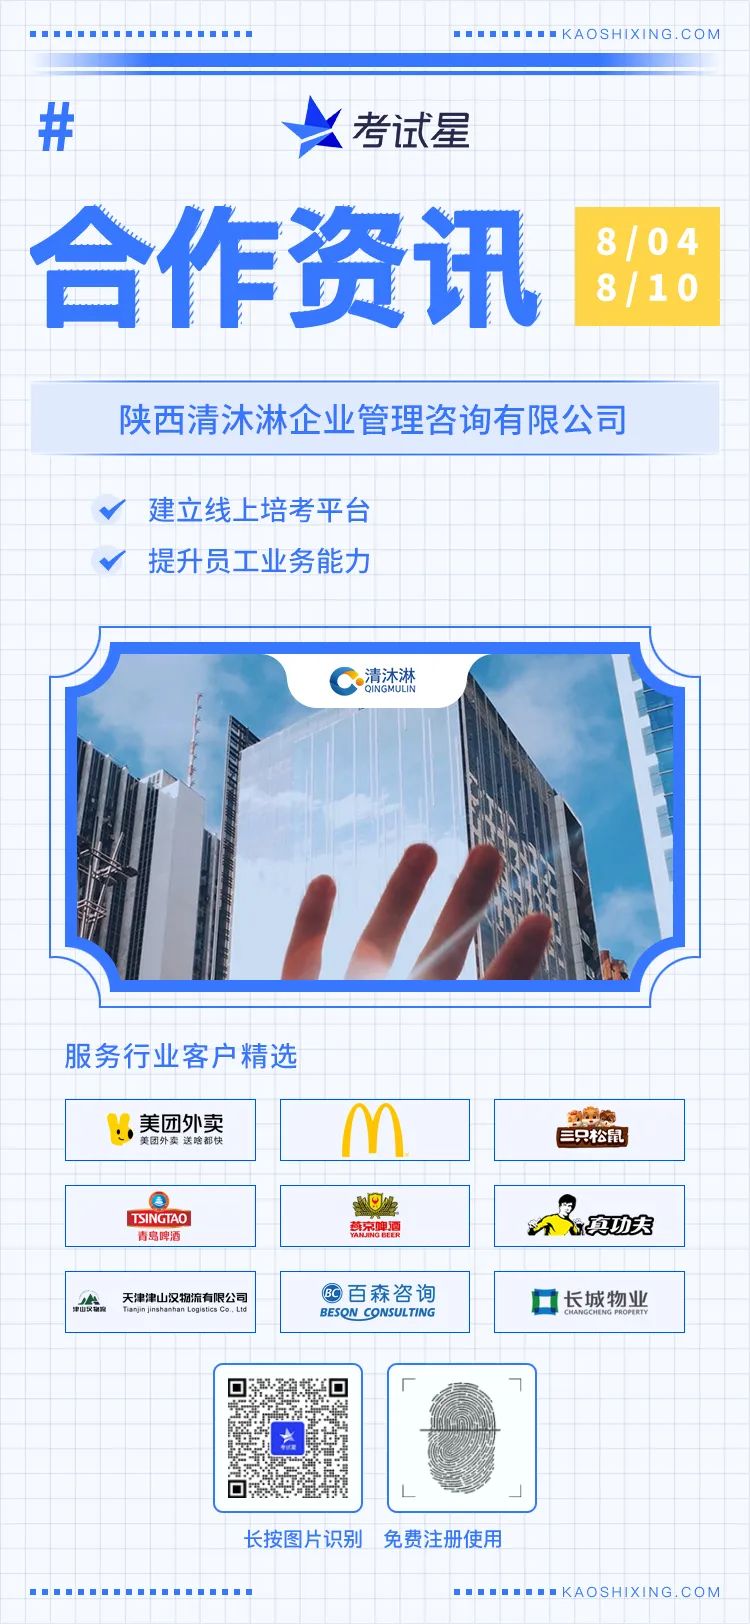 陕西清沐淋企业管理咨询有限公司-线上陪考平台